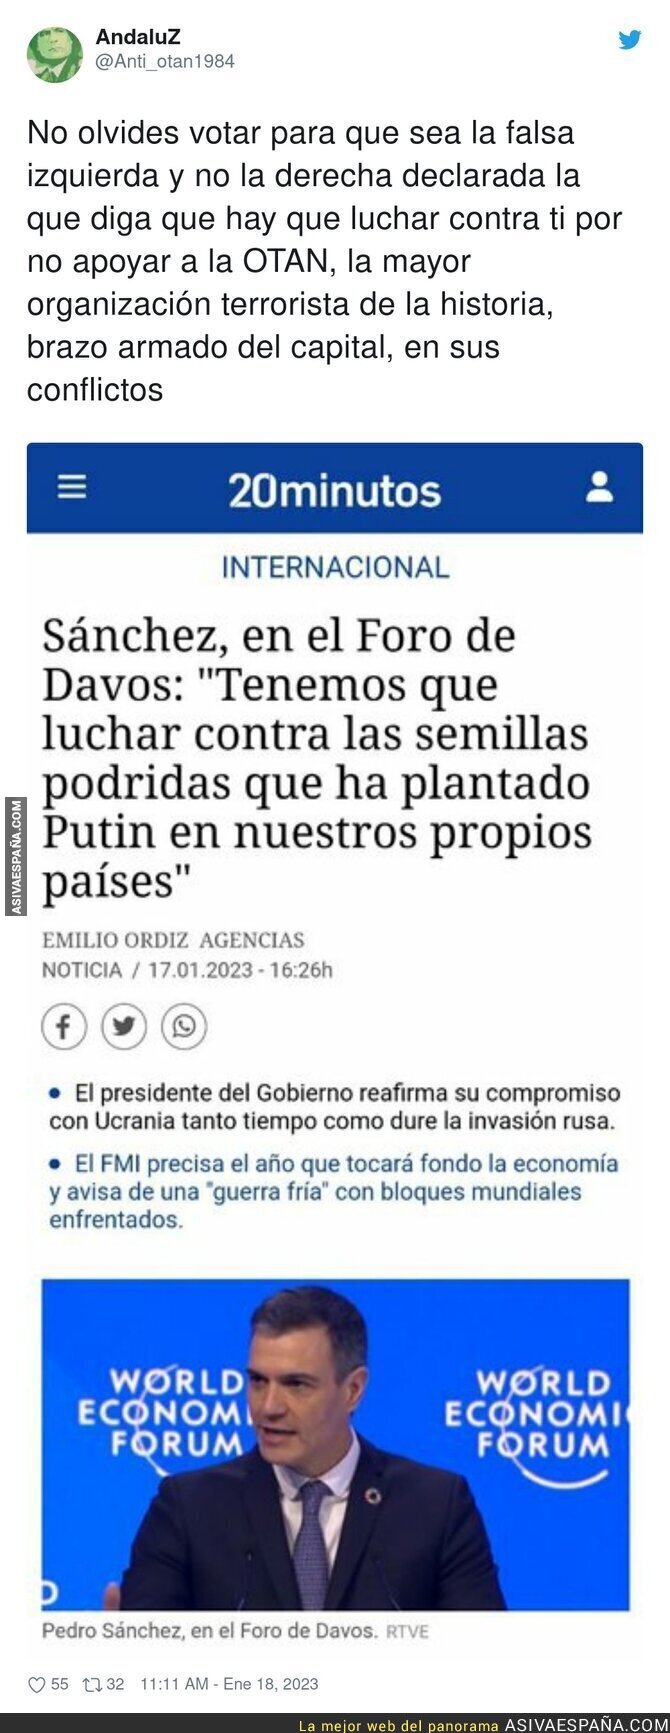 Las declaraciones de Pedro Sánchez que están dando que hablar